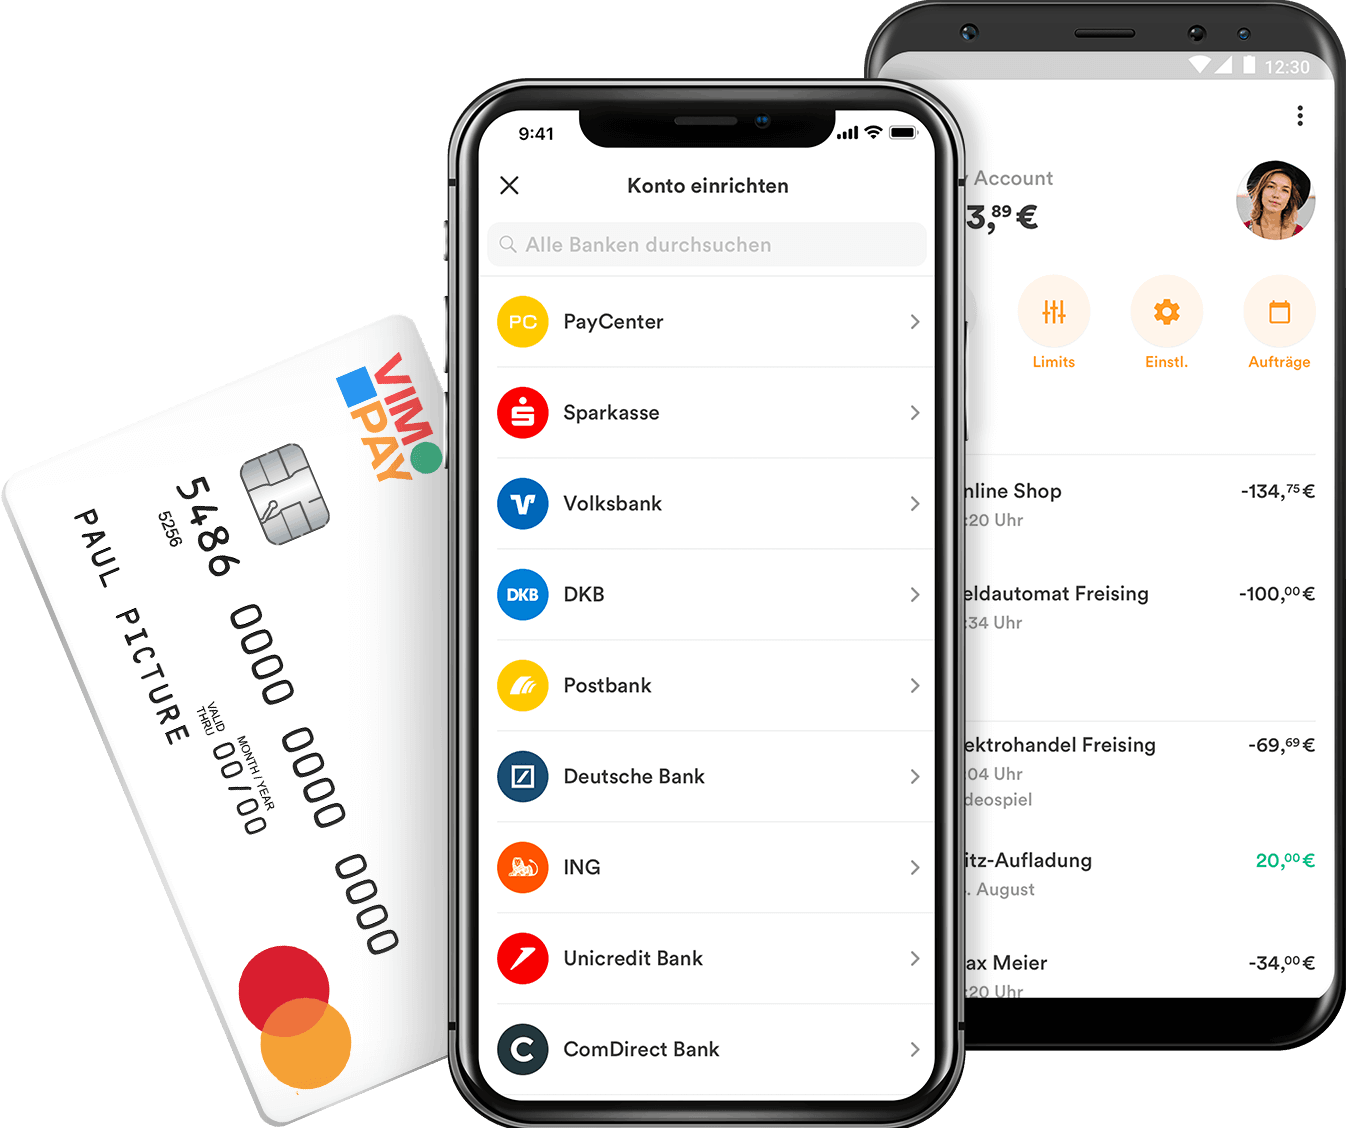 netbank Mastercard Debitkarte - Alle Infos Zu Den Konditionen & Zur Beantragung